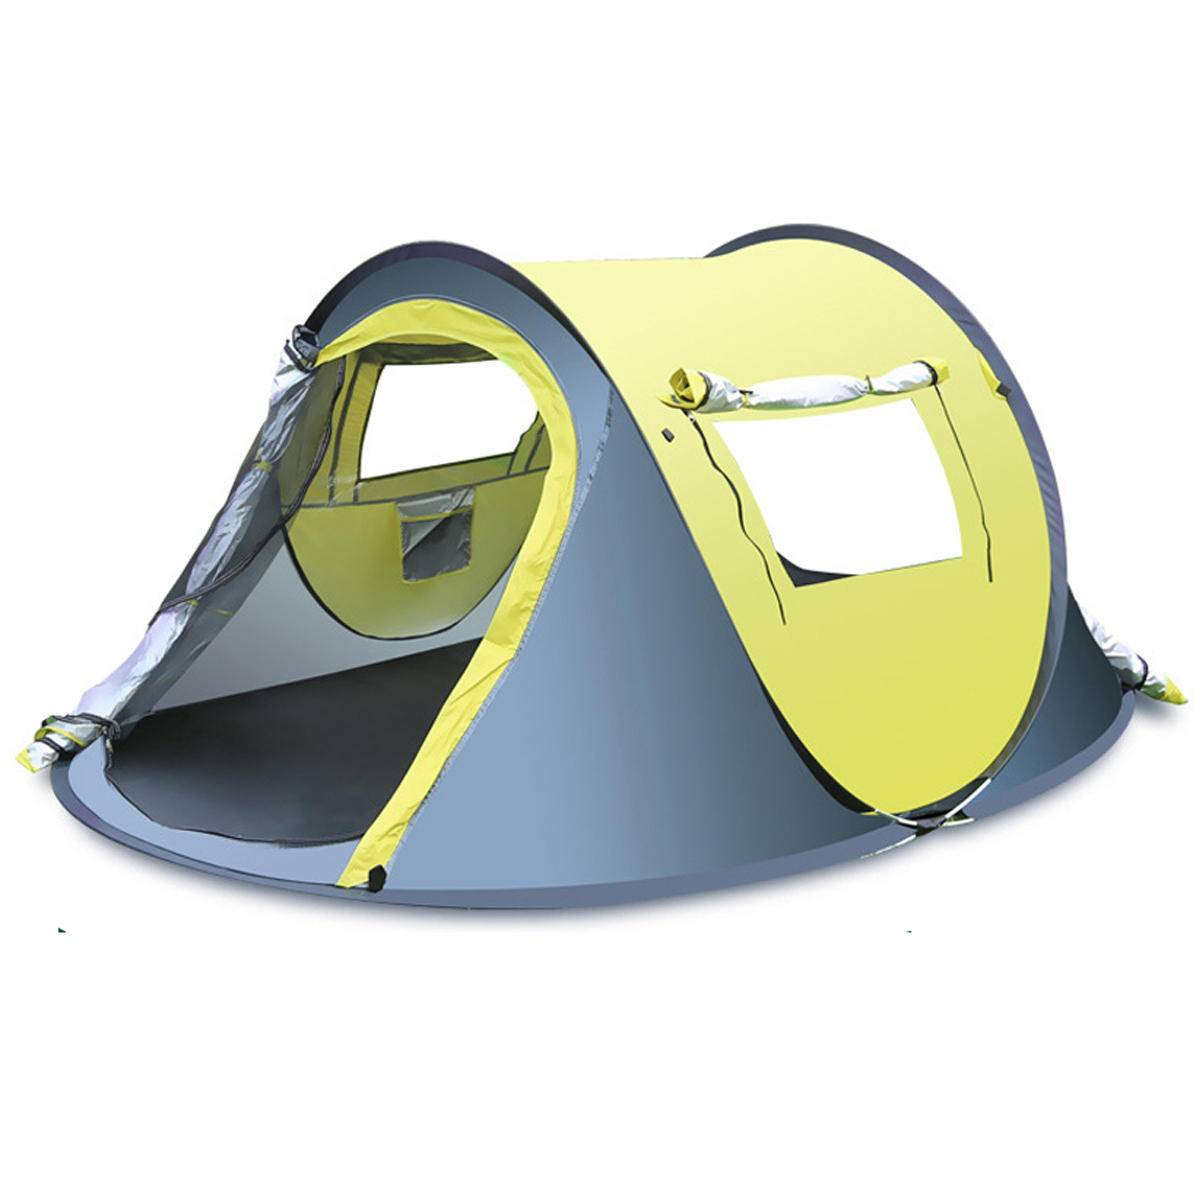 Szybki, automatyczny namiot na zewnątrz dla 3-4 osób, wodoodporny i odporny na deszcz, z baldachimem chroniącym przed słońcem, idealny do kempingu i wędrówek.